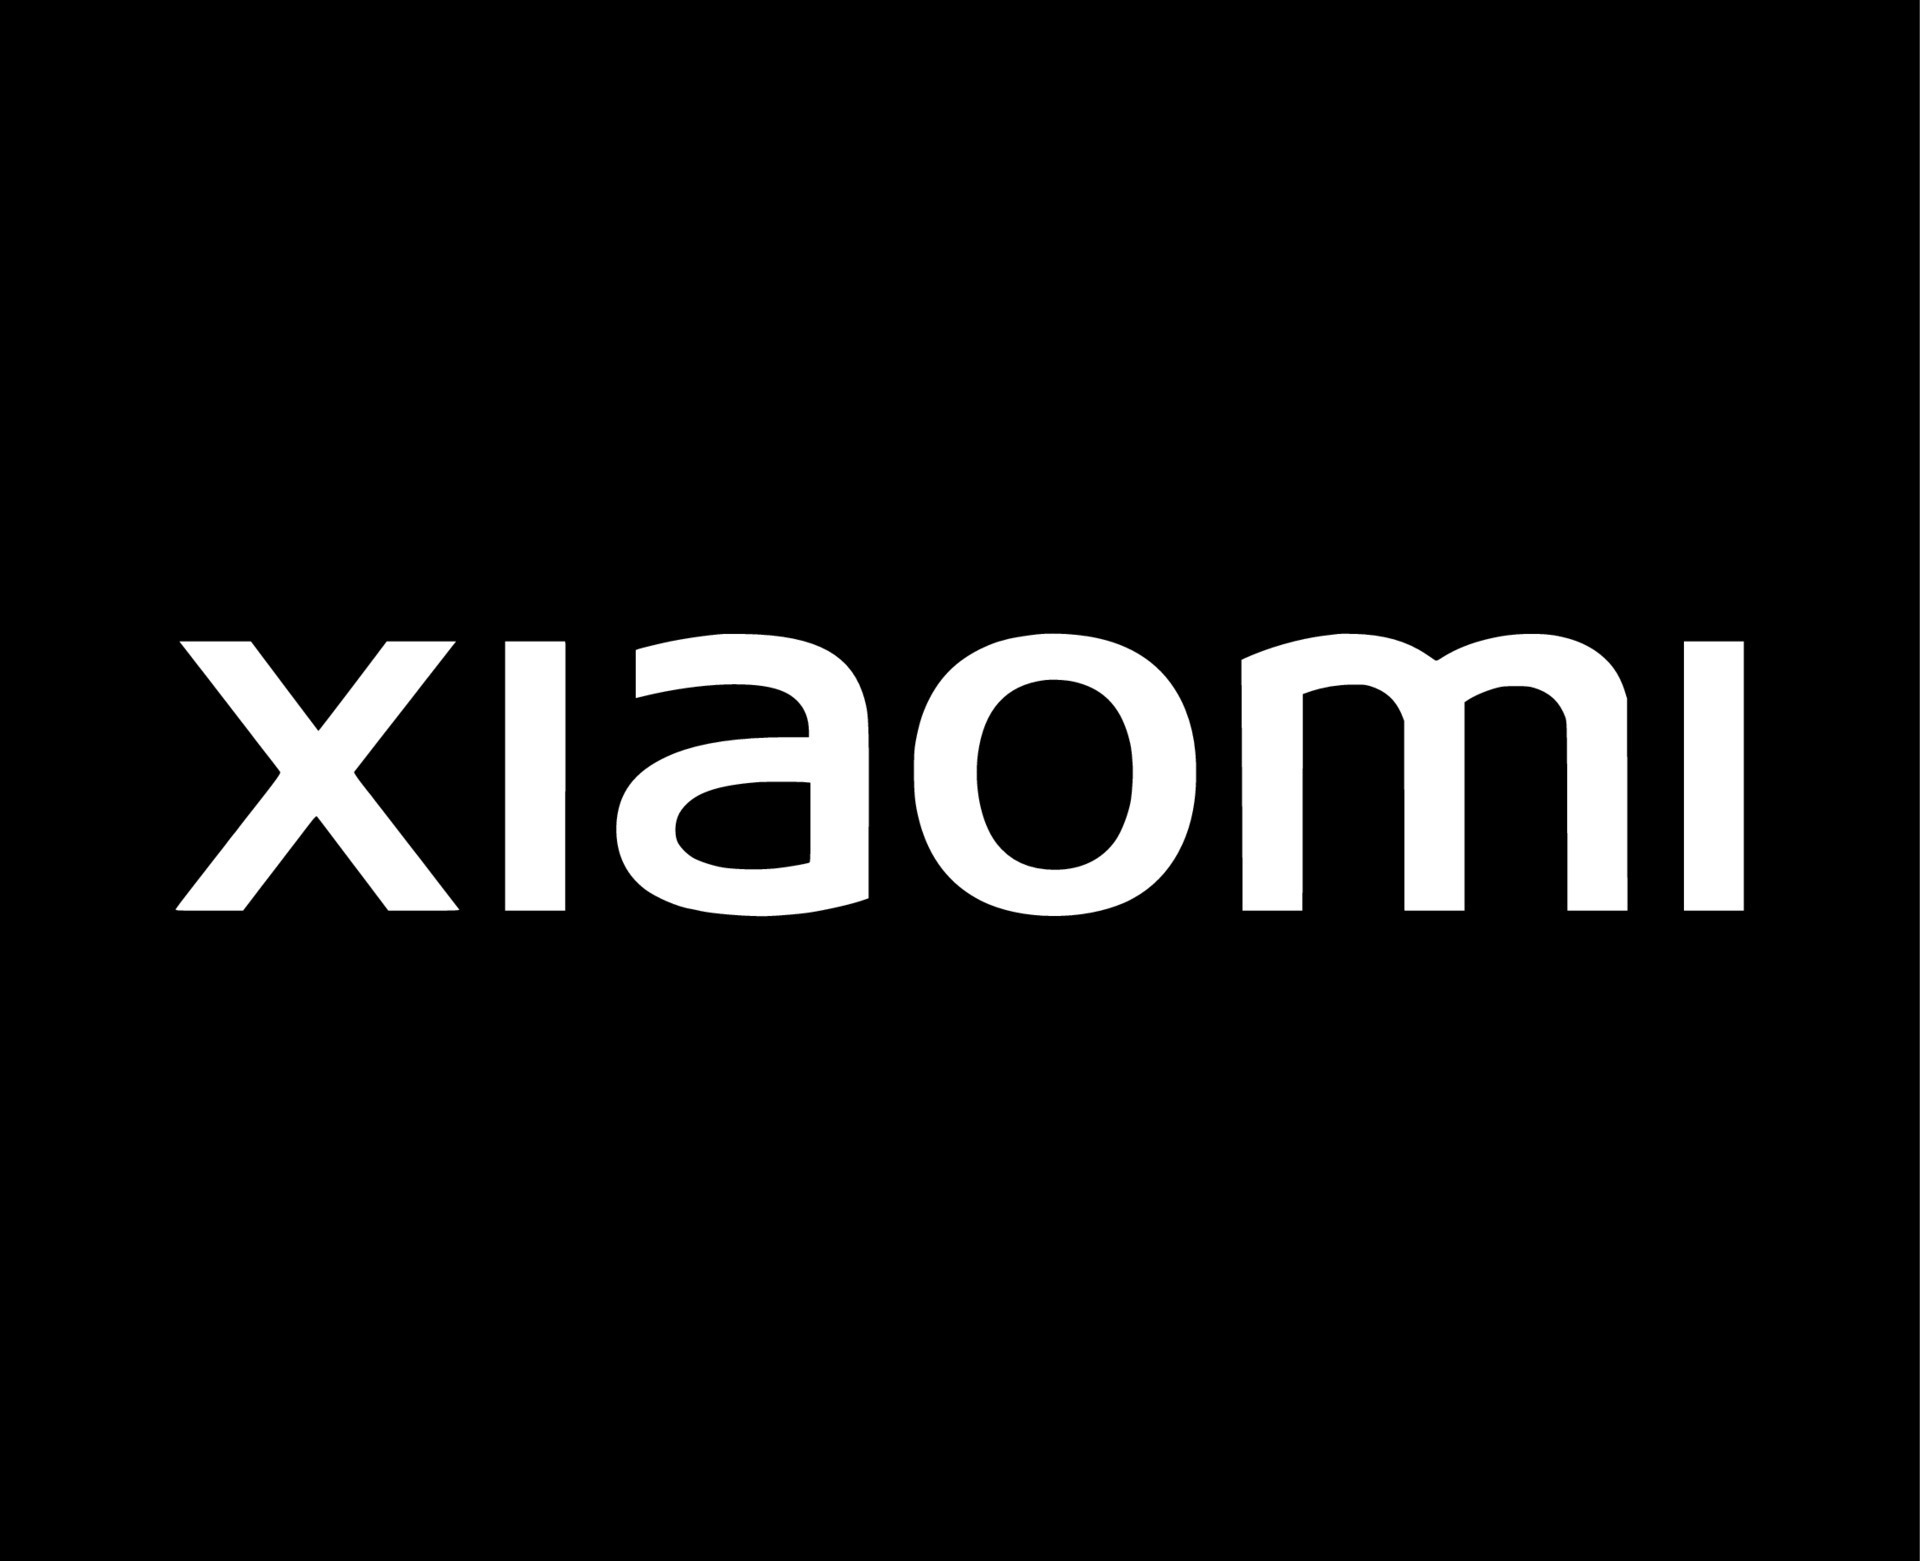 Thiết kế logo Xiaomi trên điện thoại di động với nền trắng chắc chắn sẽ khiến bạn phấn khích. Với gam màu trắng tinh khôi, nét chữ tinh tế và độ nổi bật hợp lý, đây là một sự lựa chọn chiến thuật hoàn hảo, giúp bạn tạo nên sự khác biệt trong nhóm bạn bè.